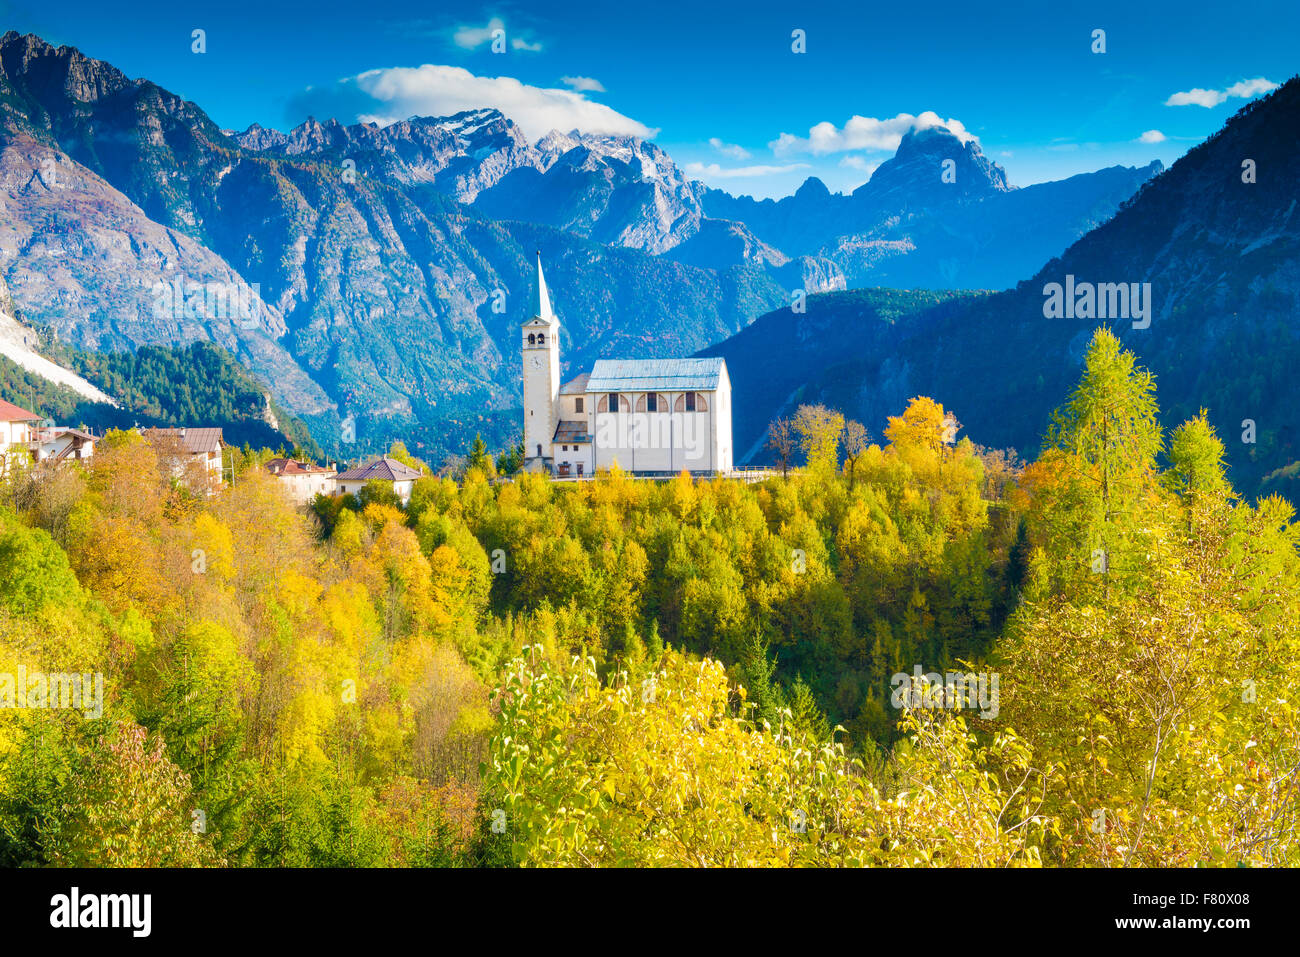 Church and Dolomite Peaks, near Cortina D'Ampezzo, Italy, Italian Alps Stock Photo